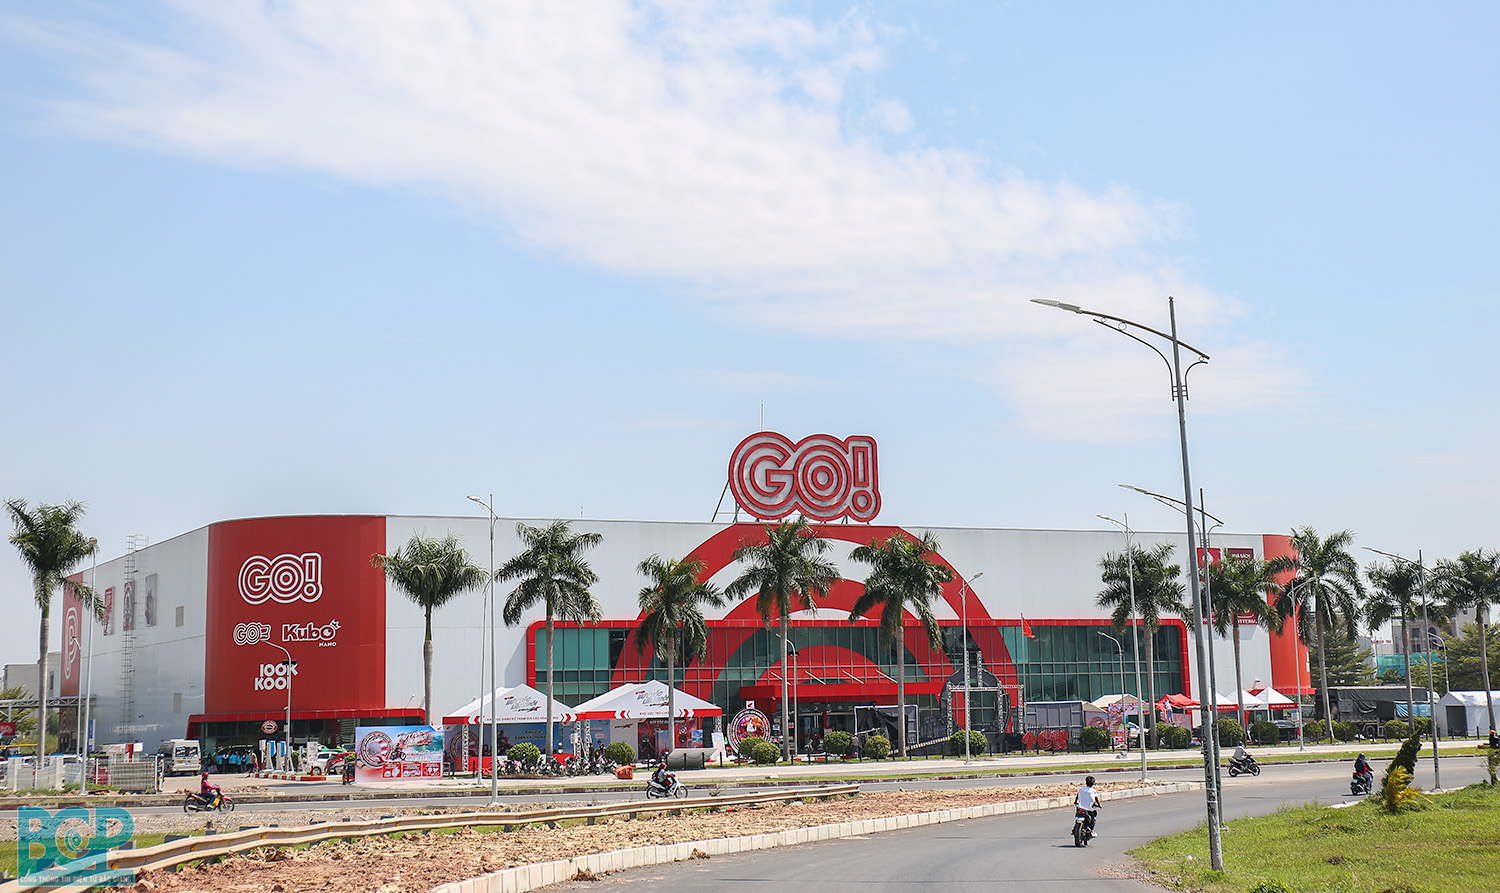 'Đại gia' bán lẻ Thái Lan được phê duyệt quy hoạch xây dựng đại siêu thị 1,5ha tại Hưng Yên- Ảnh 1.